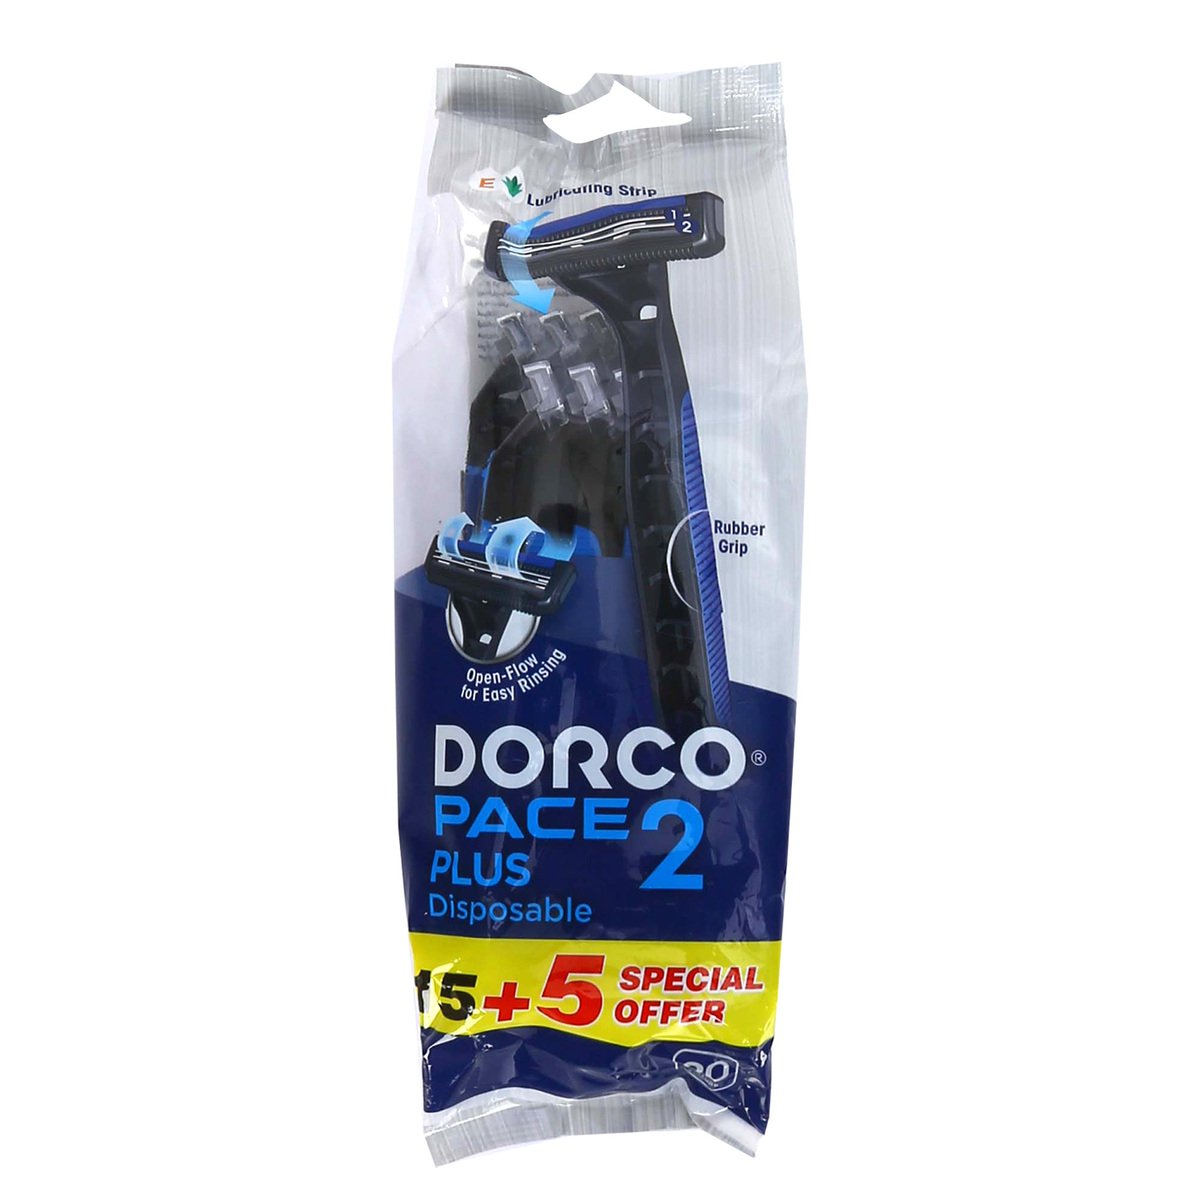 Buy Dorco Pace 2 Plus Disposable Razor For Men 15+5 Online at Best Price | Razor Disposable | Lulu UAE in UAE